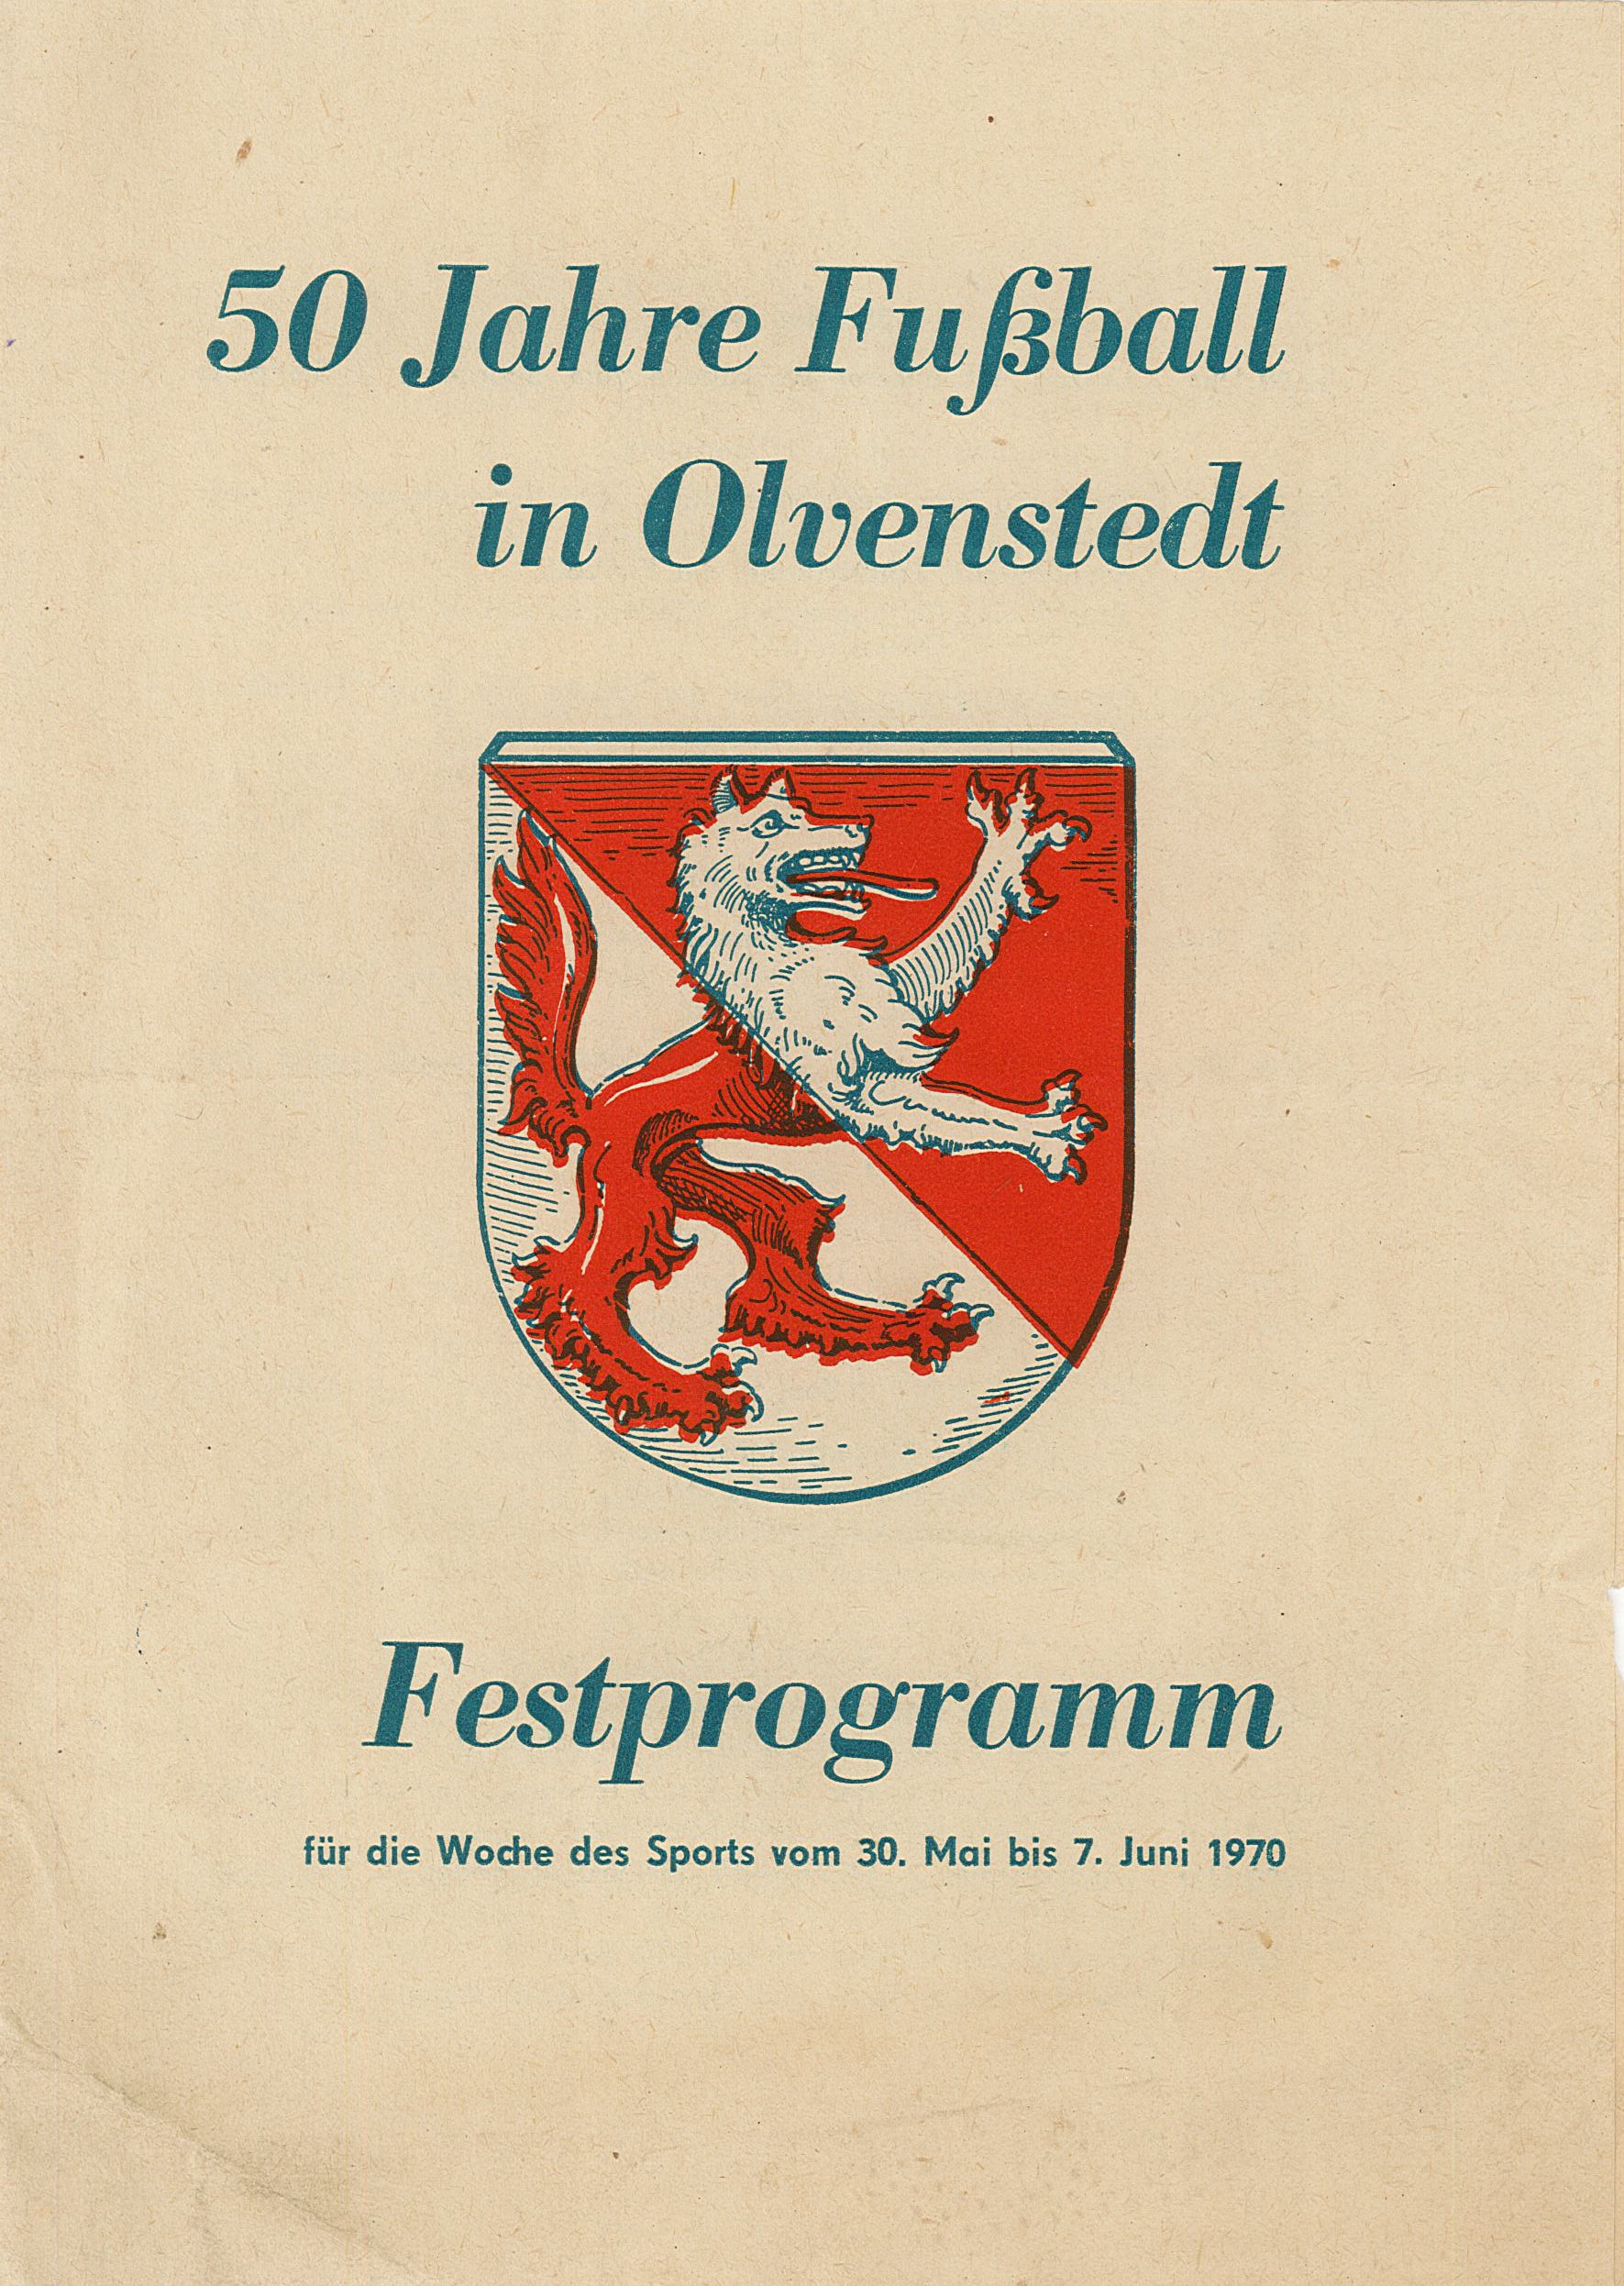 Festprogramm "50 Jahre Fußball in Olvenstedt", 1970 (Museum Wolmirstedt RR-F)